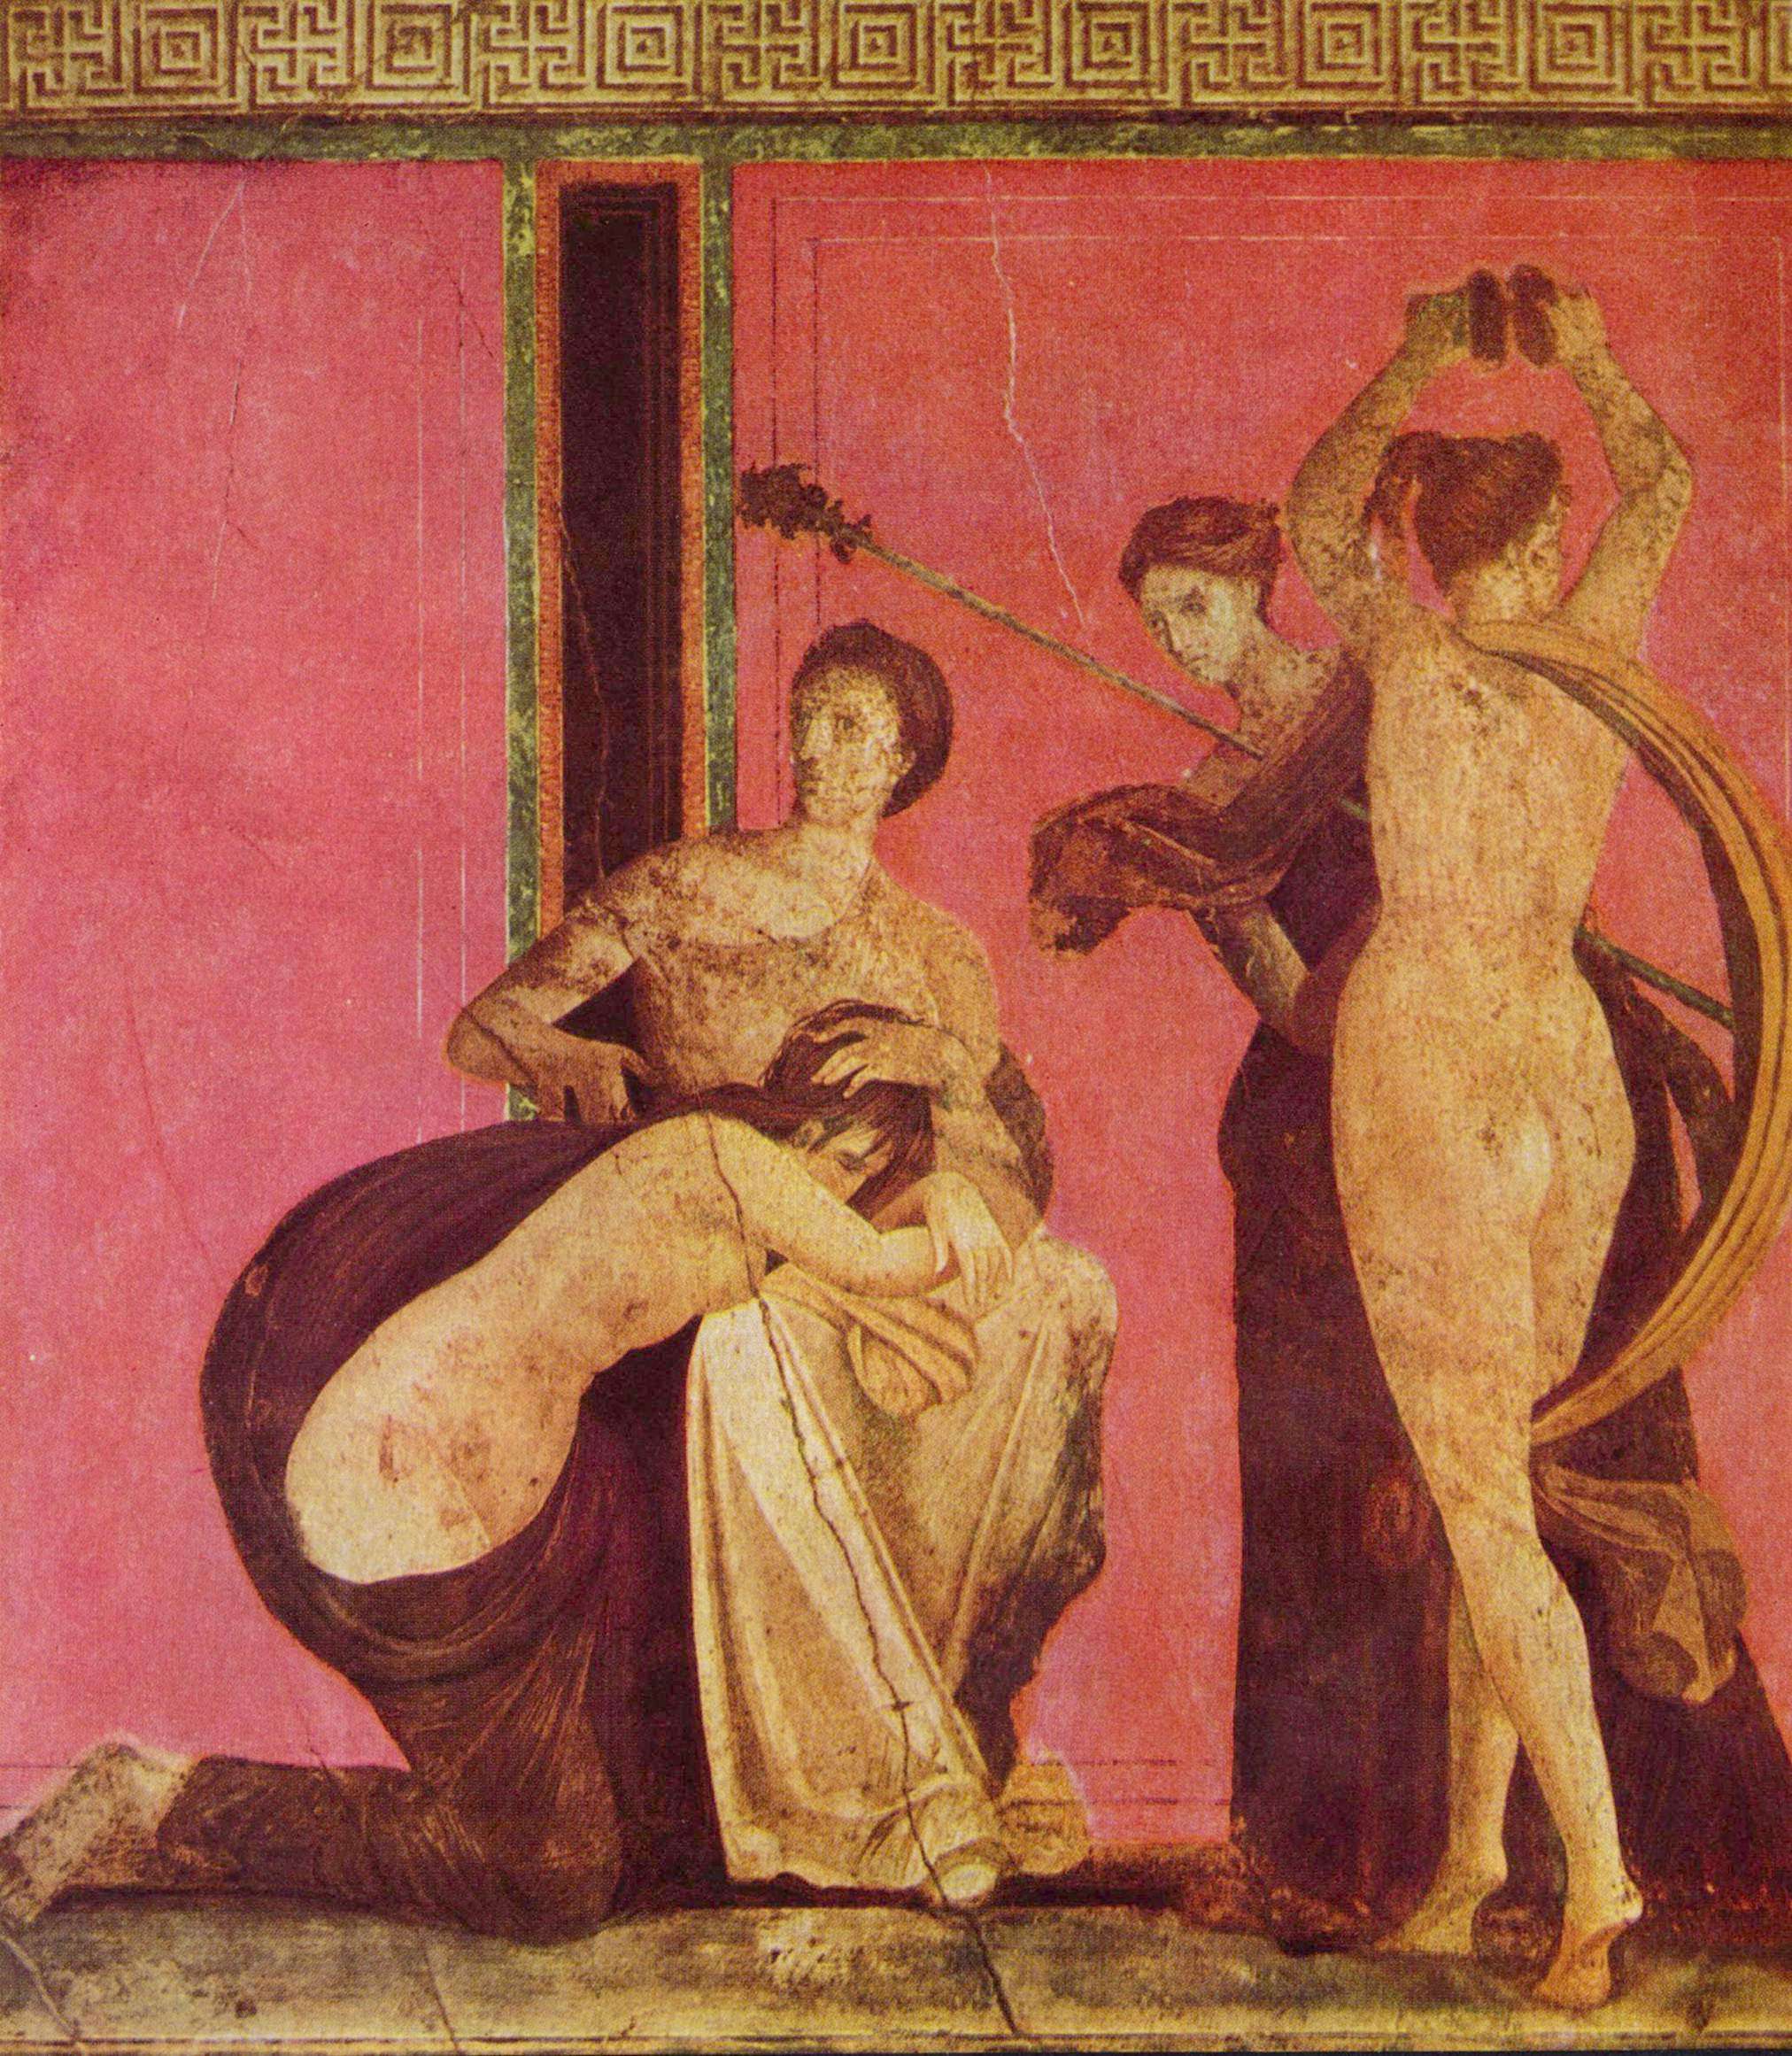 Τοιχογραφία από τη Βίλλα των Μυστηρίων στην Πομπηία. Θεωρείται ότι αναπαριστά βακχική ιερογαμία.